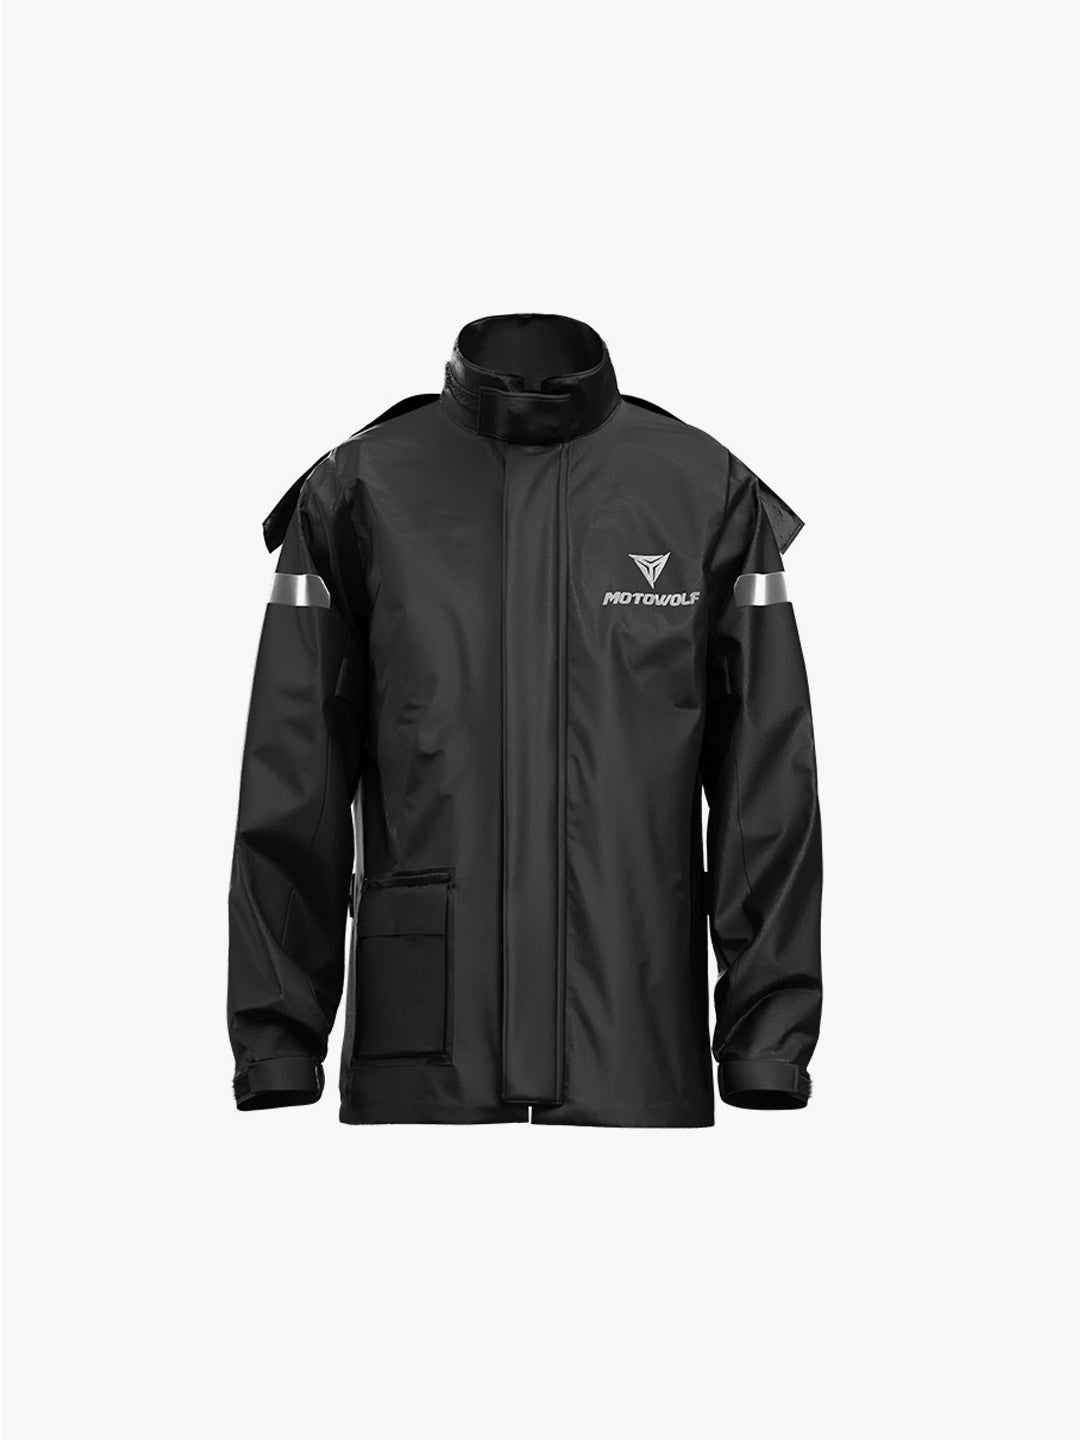 Motowolf Raincoat Black 0401